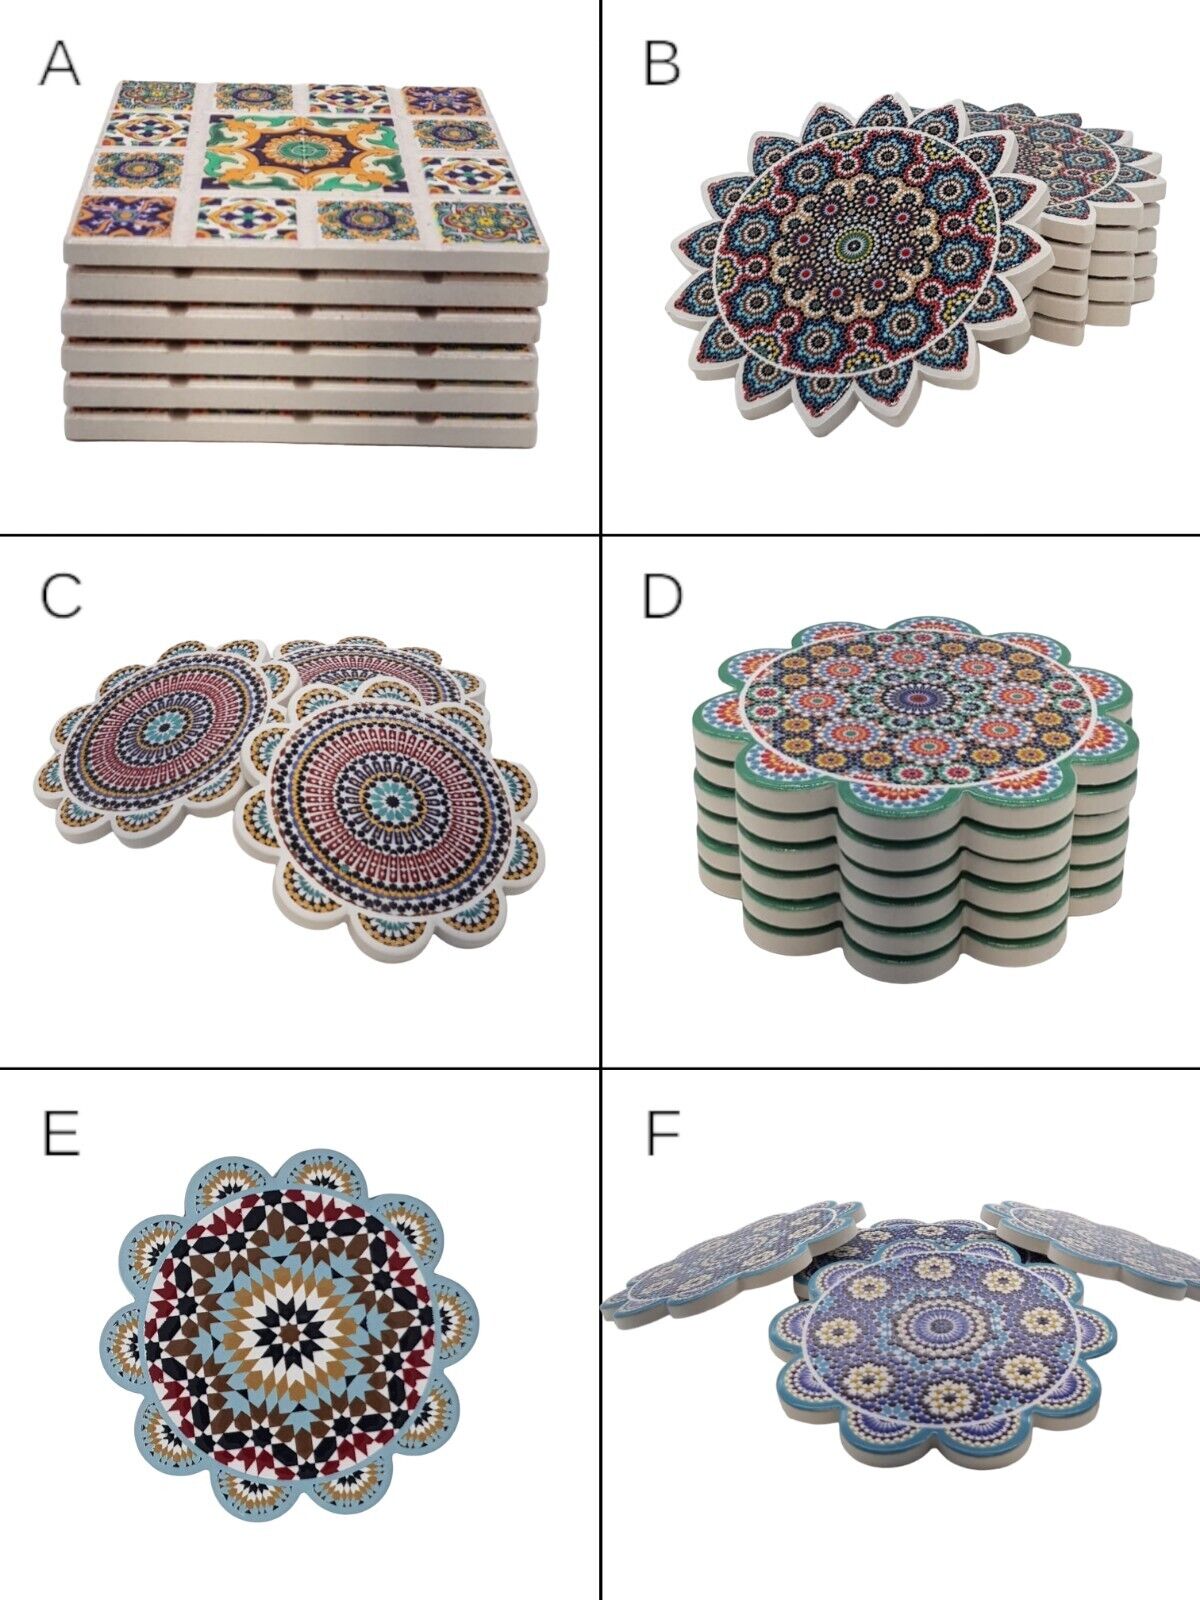 6-er Pack Untersetzer aus Marokko Farbenfrohe Eleganz für Ihren Tisch